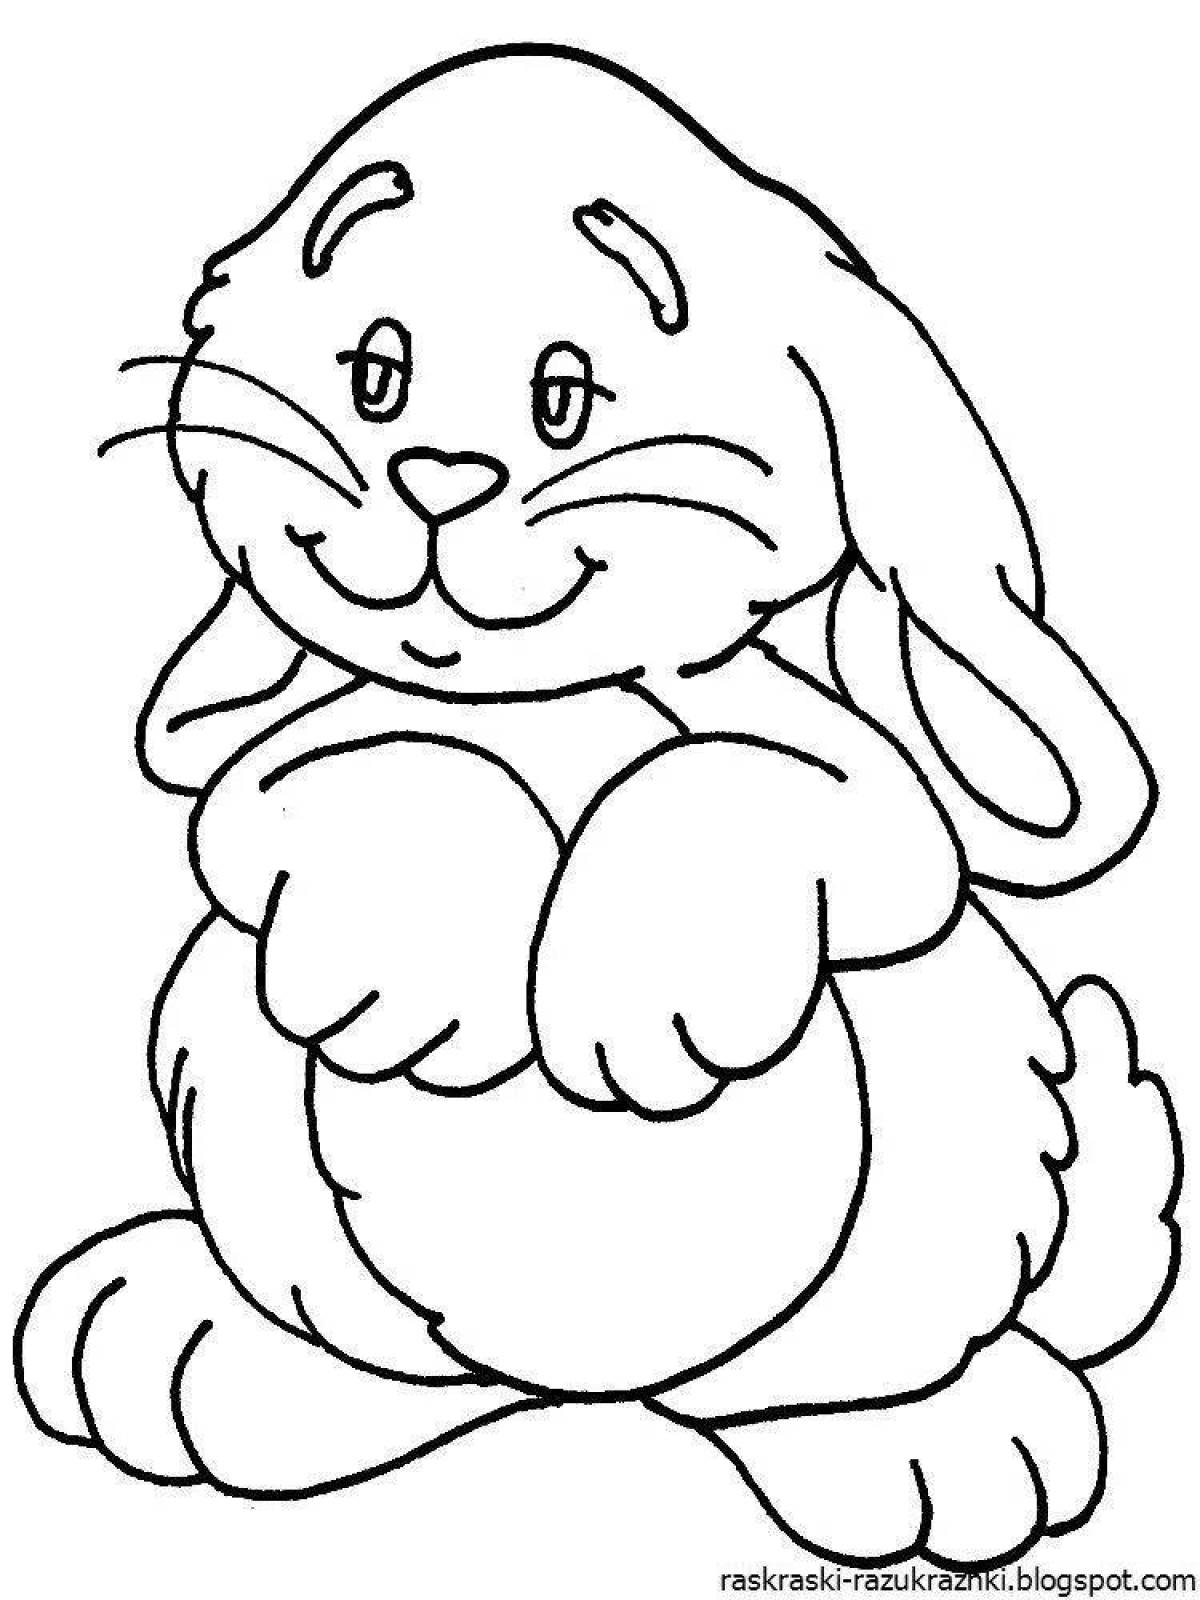 Волшебная раскраска кролика для детей